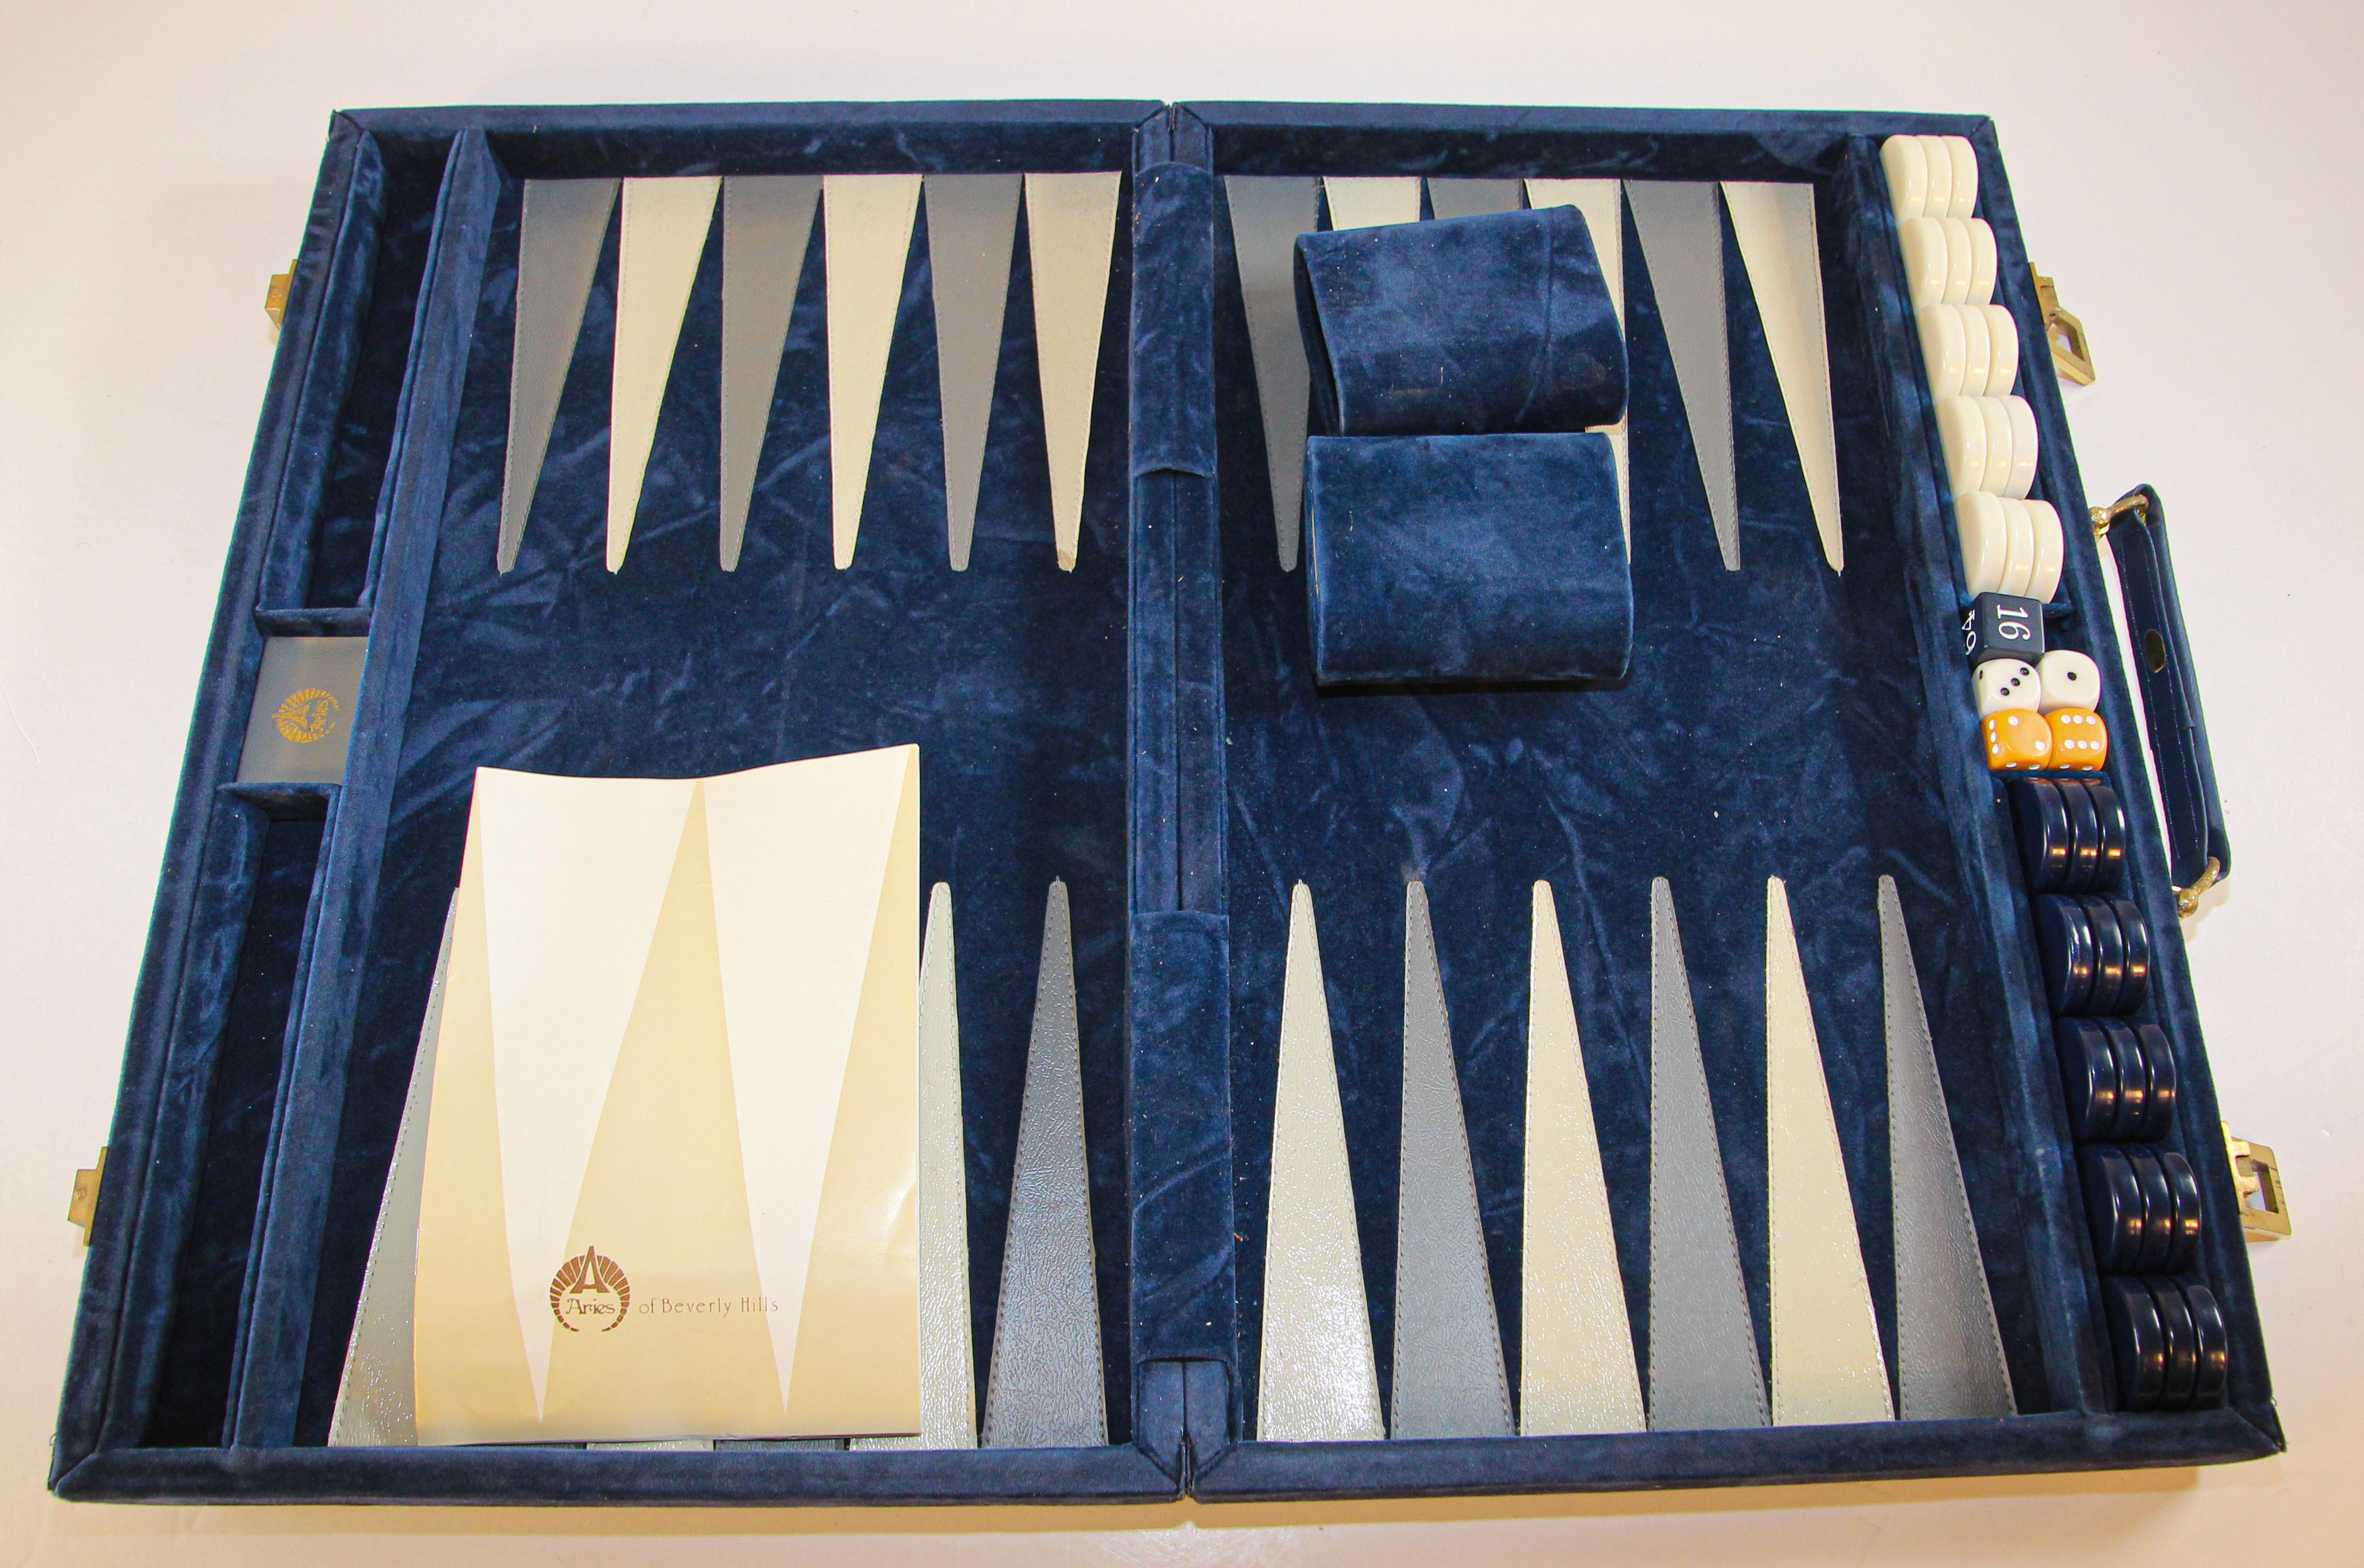 Vieux jeu de backgammon Aries de collection dans une mallette en tissu velours bleu des années 1970. 
Il s'agit d'un ensemble professionnel de backgammon exclusif Aries of Beverly Hills:: conçu dans un tissu extérieur en velours bleu. La poignée est